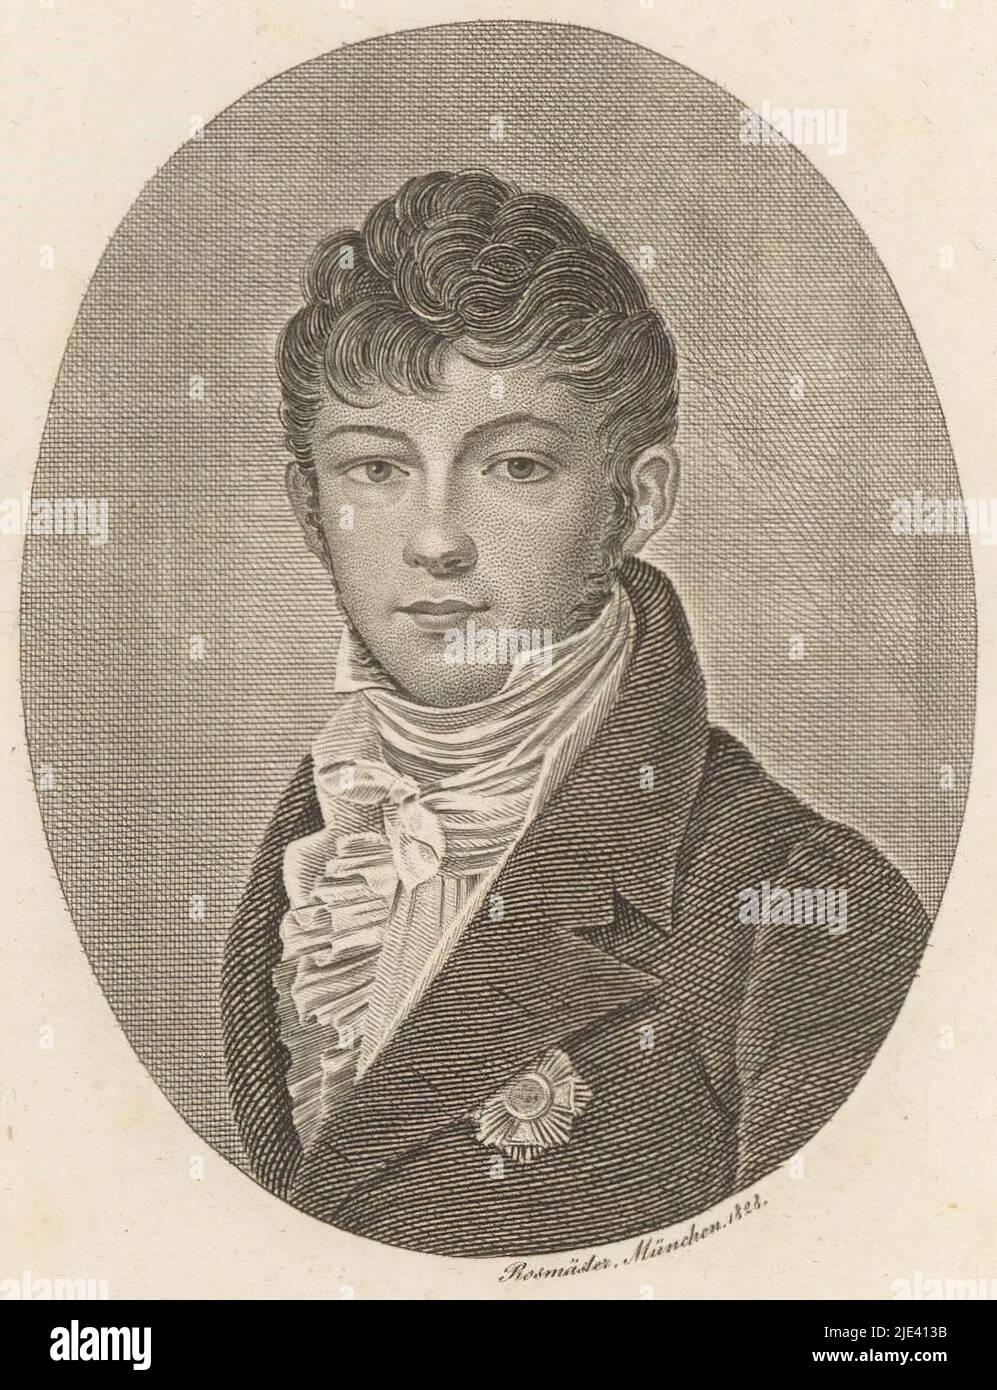 Portrait of George William of Schaumburg-Lippe, Friedrich Rossmässler, 1828, print maker: Friedrich Rossmässler, (mentioned on object), München, 1828, paper, engraving, h 134 mm - w 105 mm Stock Photo